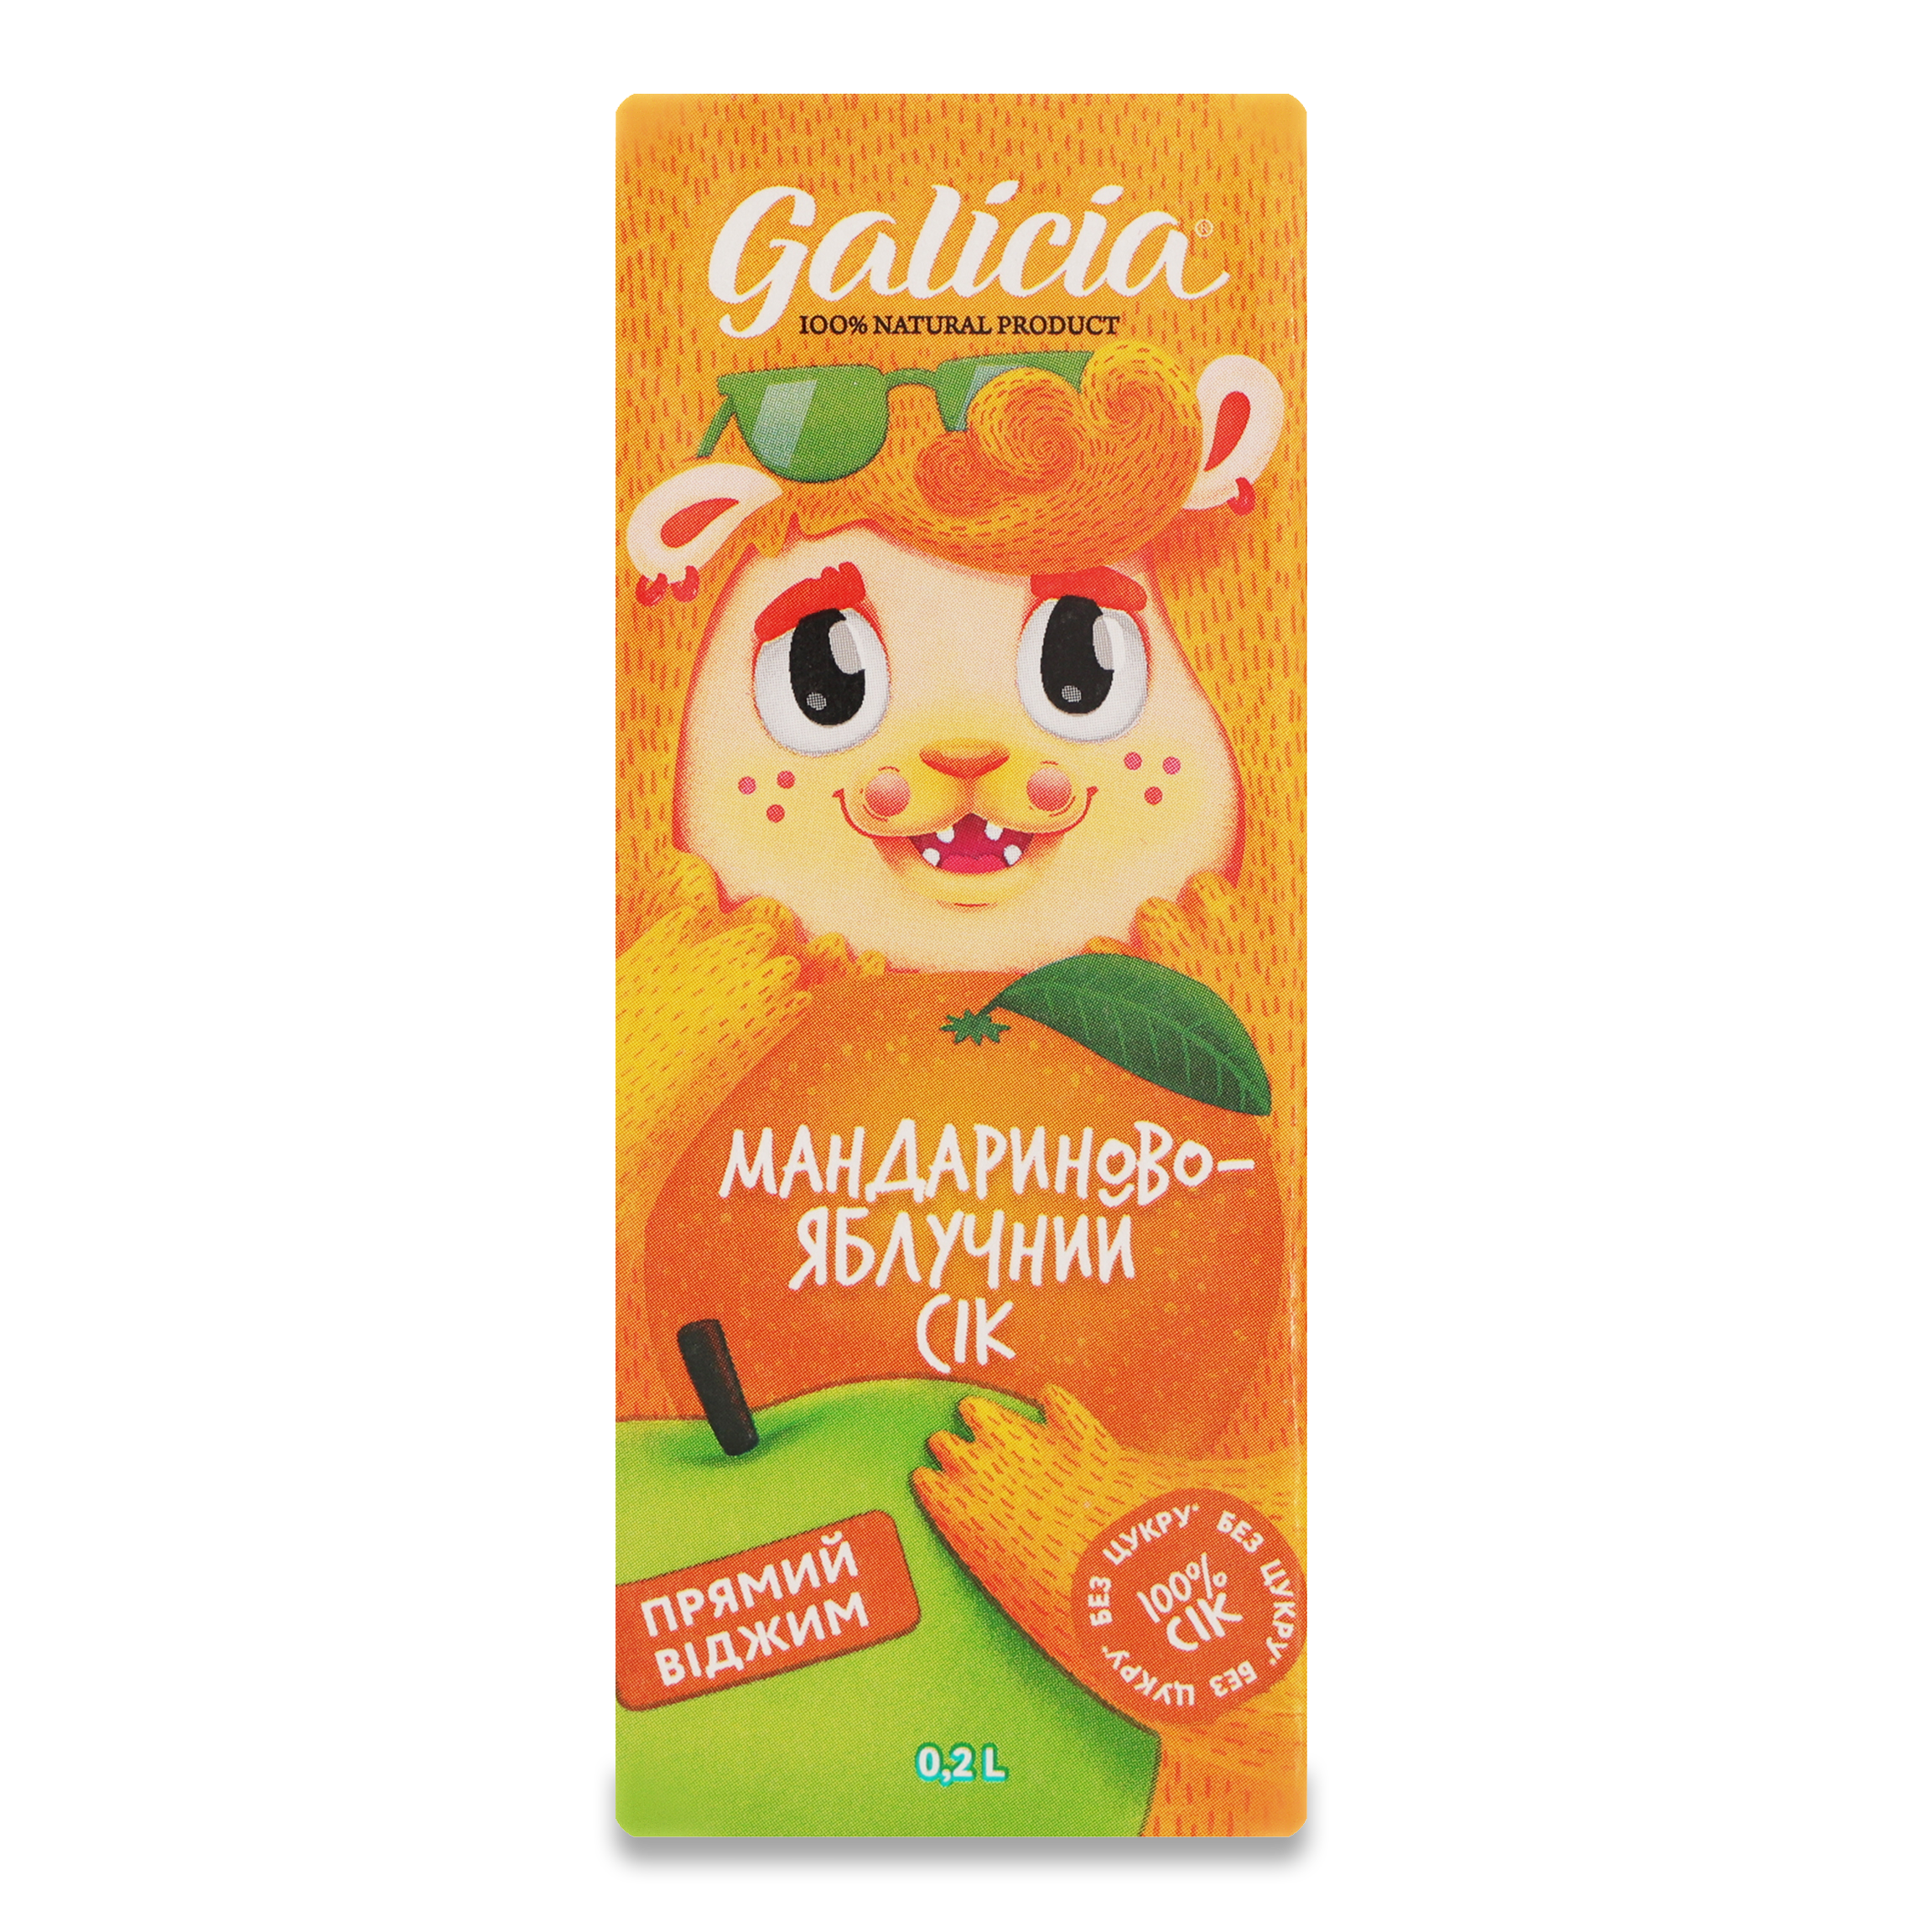 Galicia Tangerine-Apple Uncleared Juice 0,2l